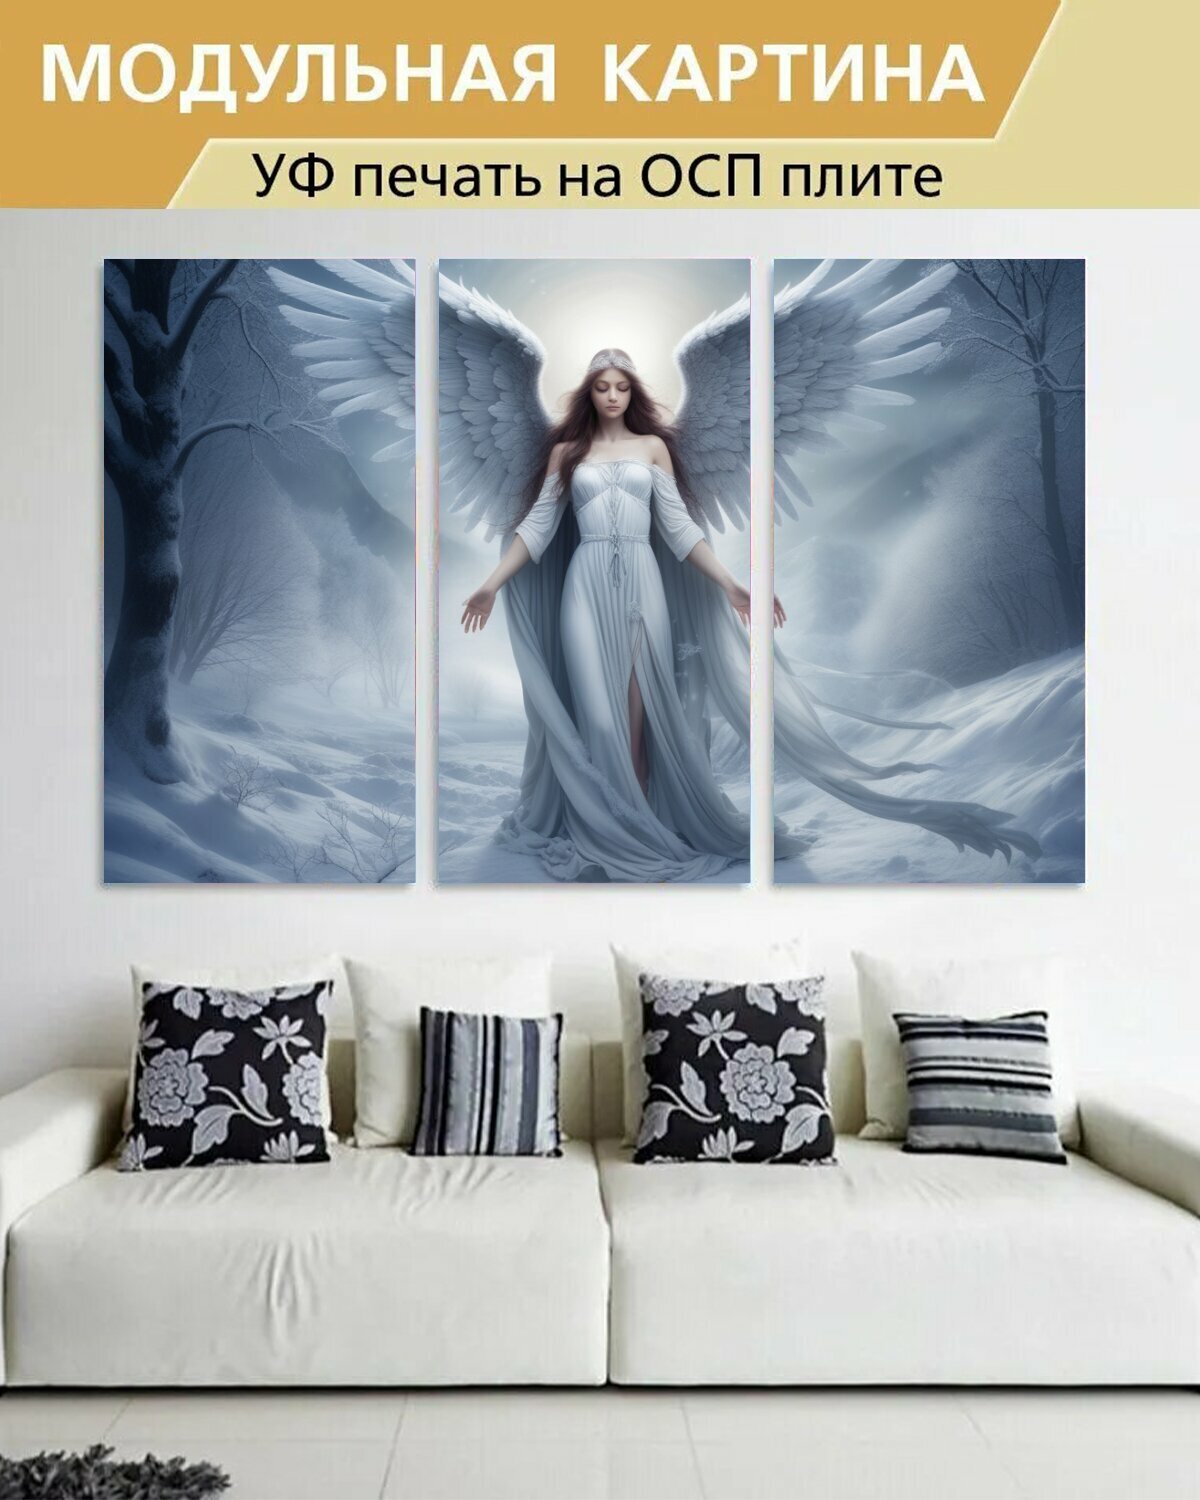 Модульная картина на ОСП любителям мистики "Божественные существа, ангел, зимой" 188x125 см. 3 части для интерьера на стену